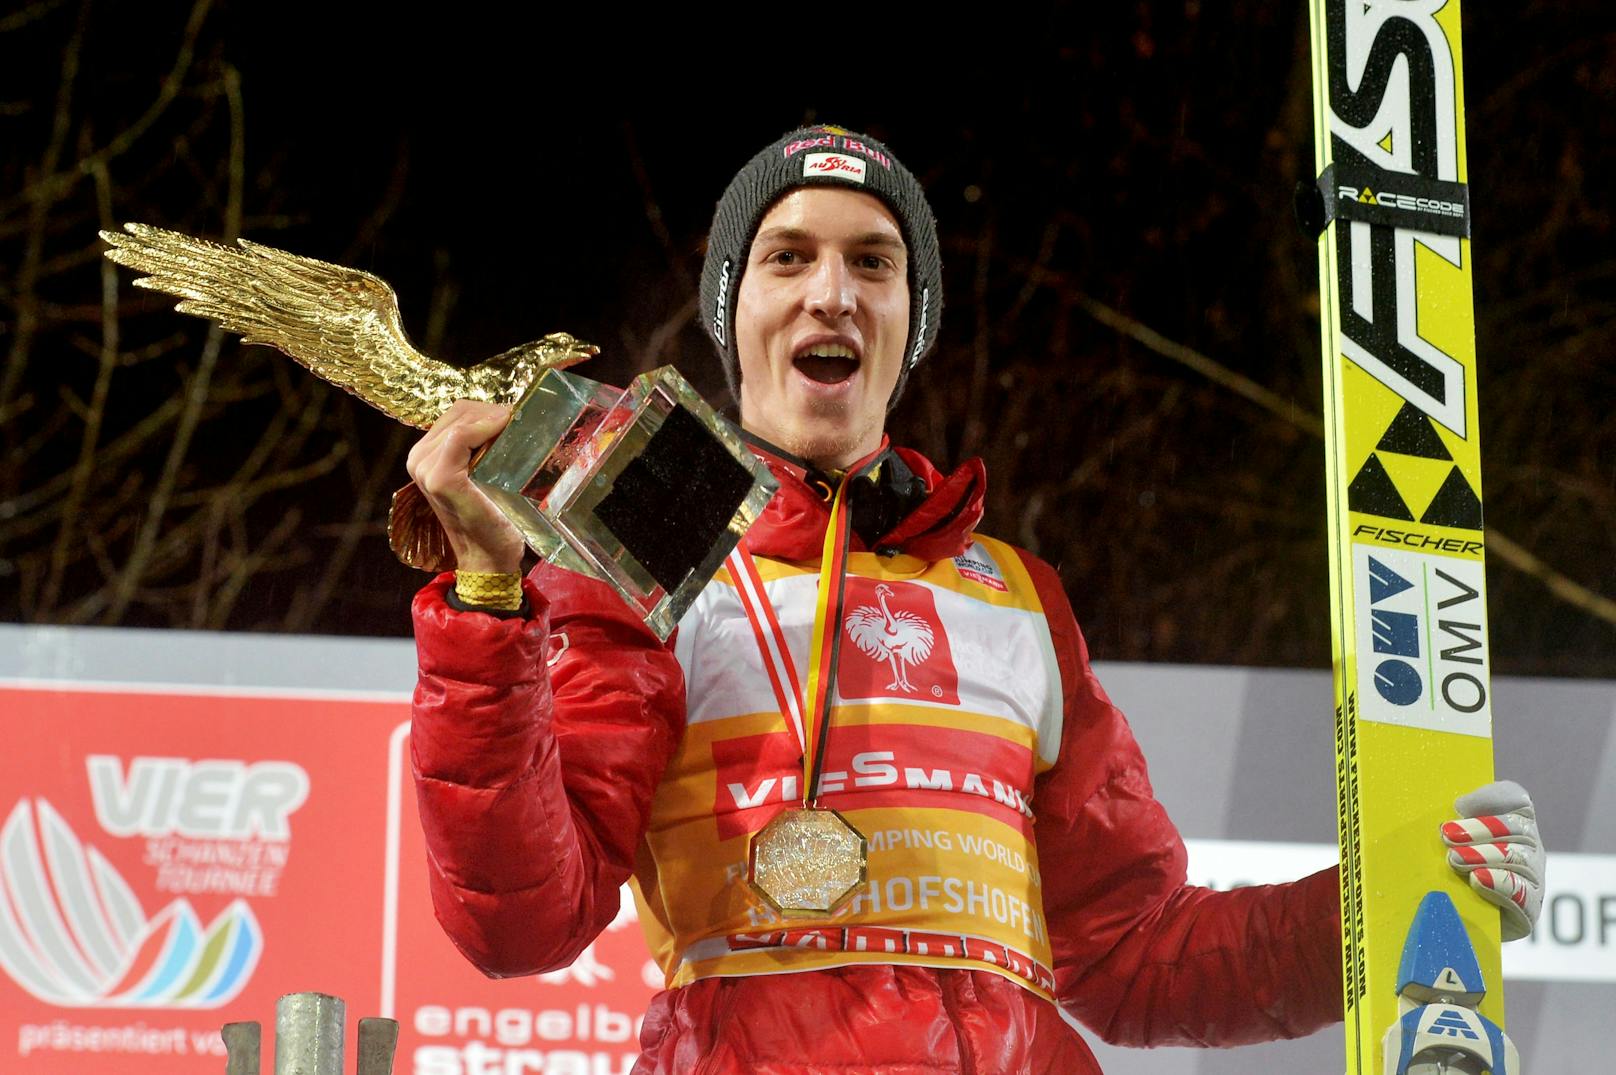 2013 krönt er die Fabelsaison mit seinem zweiten Gesamtsieg bei der Vierschanzentournee. Nach 2012 schlägt er zum zweiten Mal beim prestigeträchtigen Skisprung-Wettkampf zu.